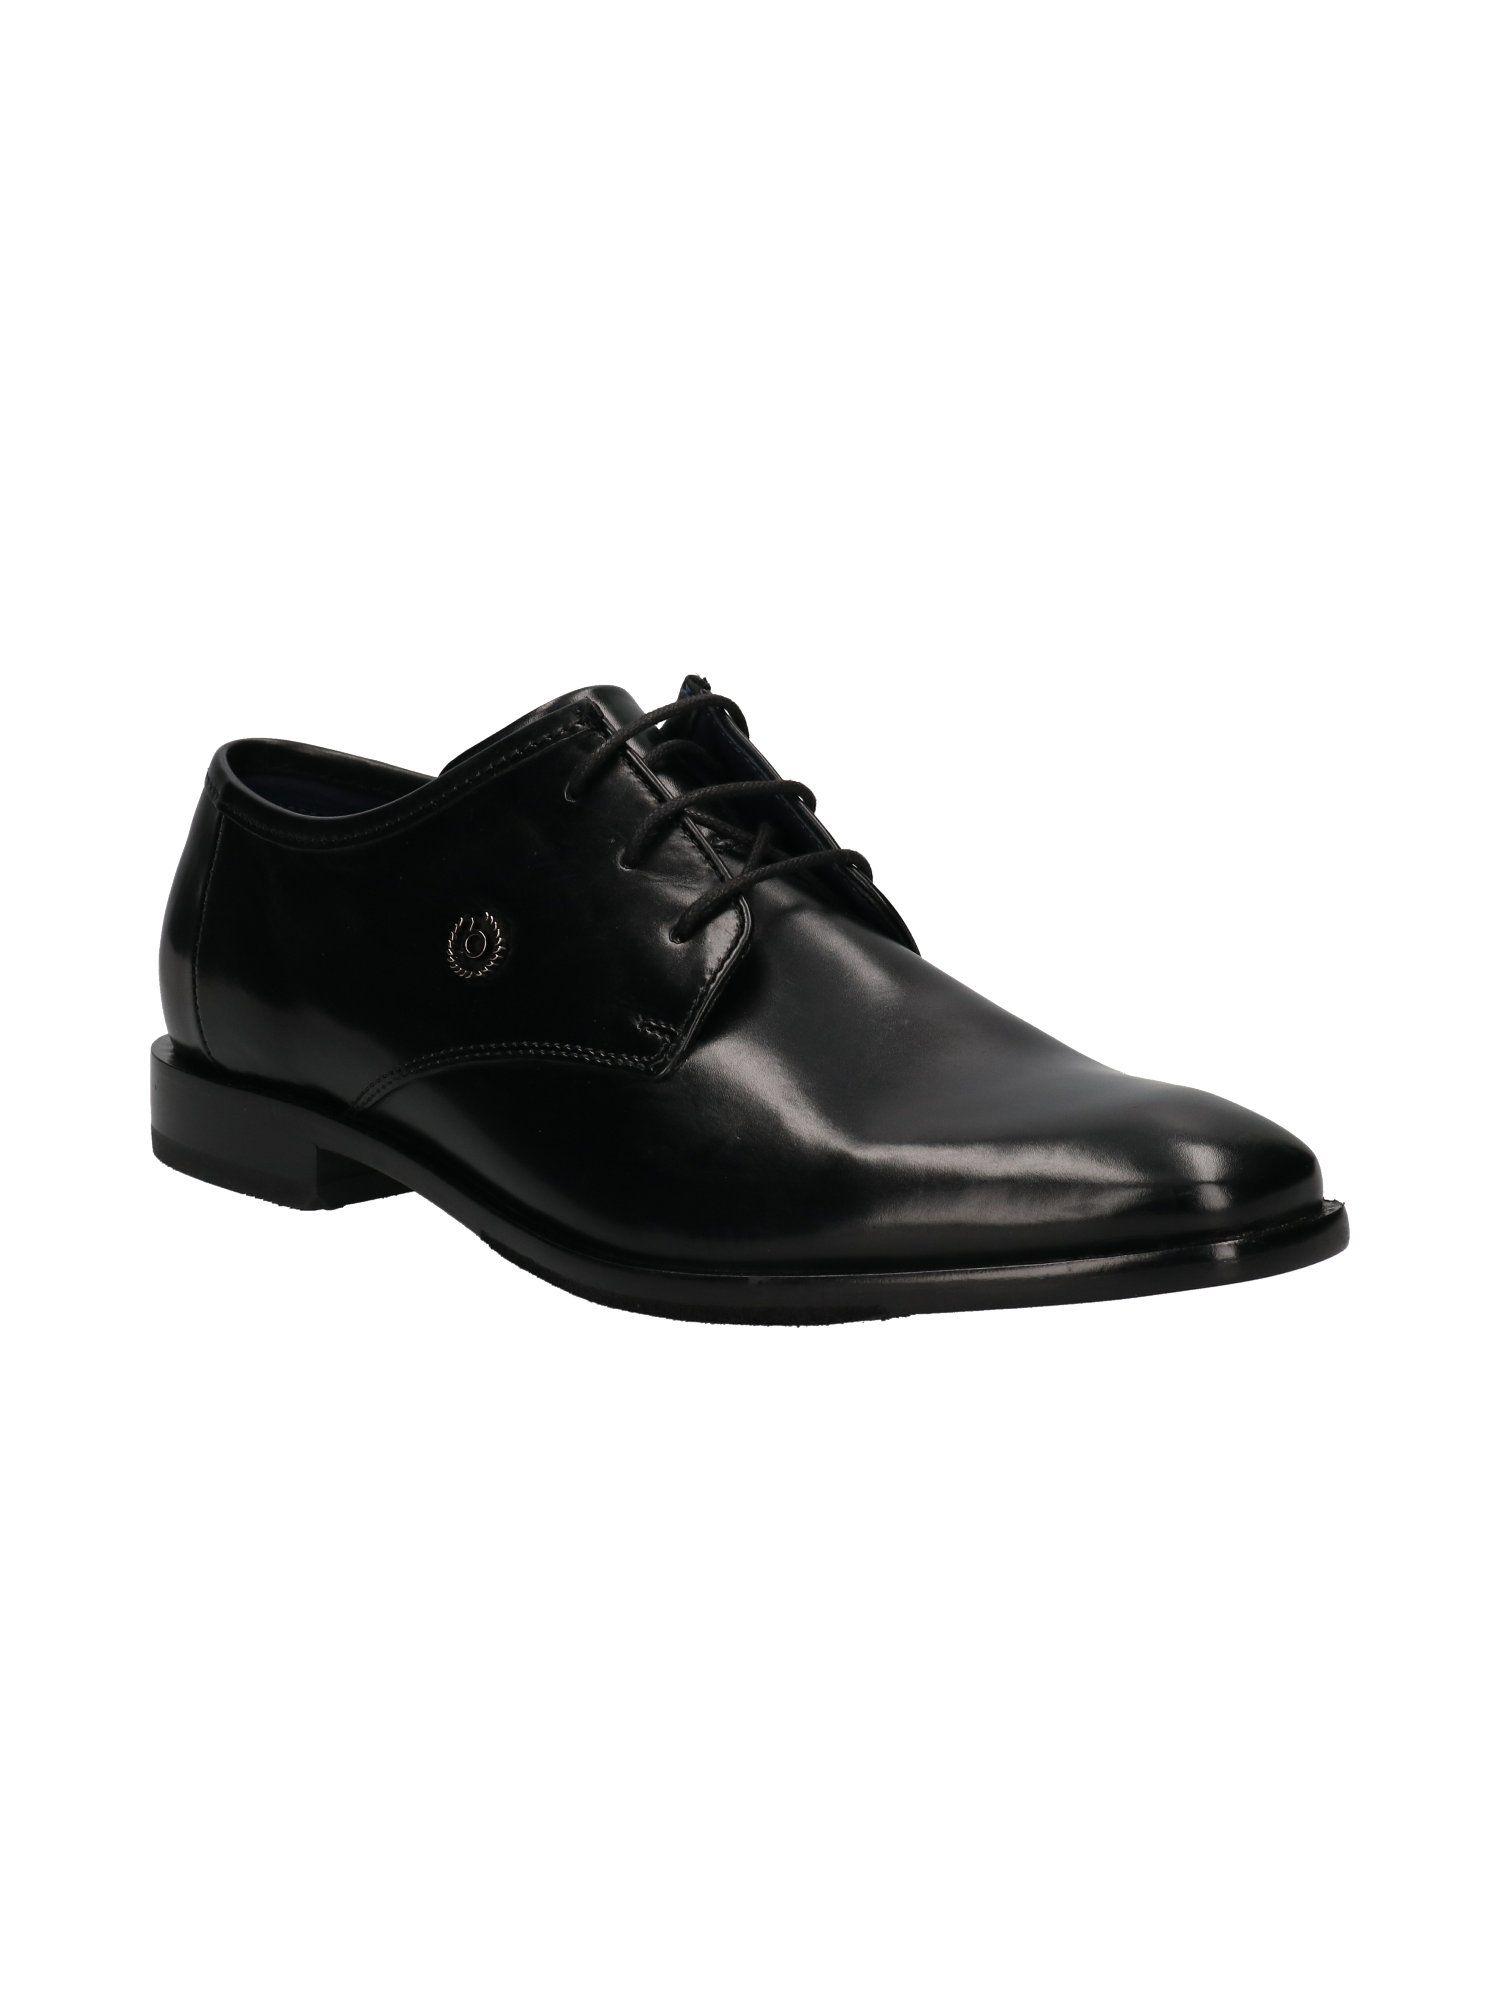 men solid black formal shoes